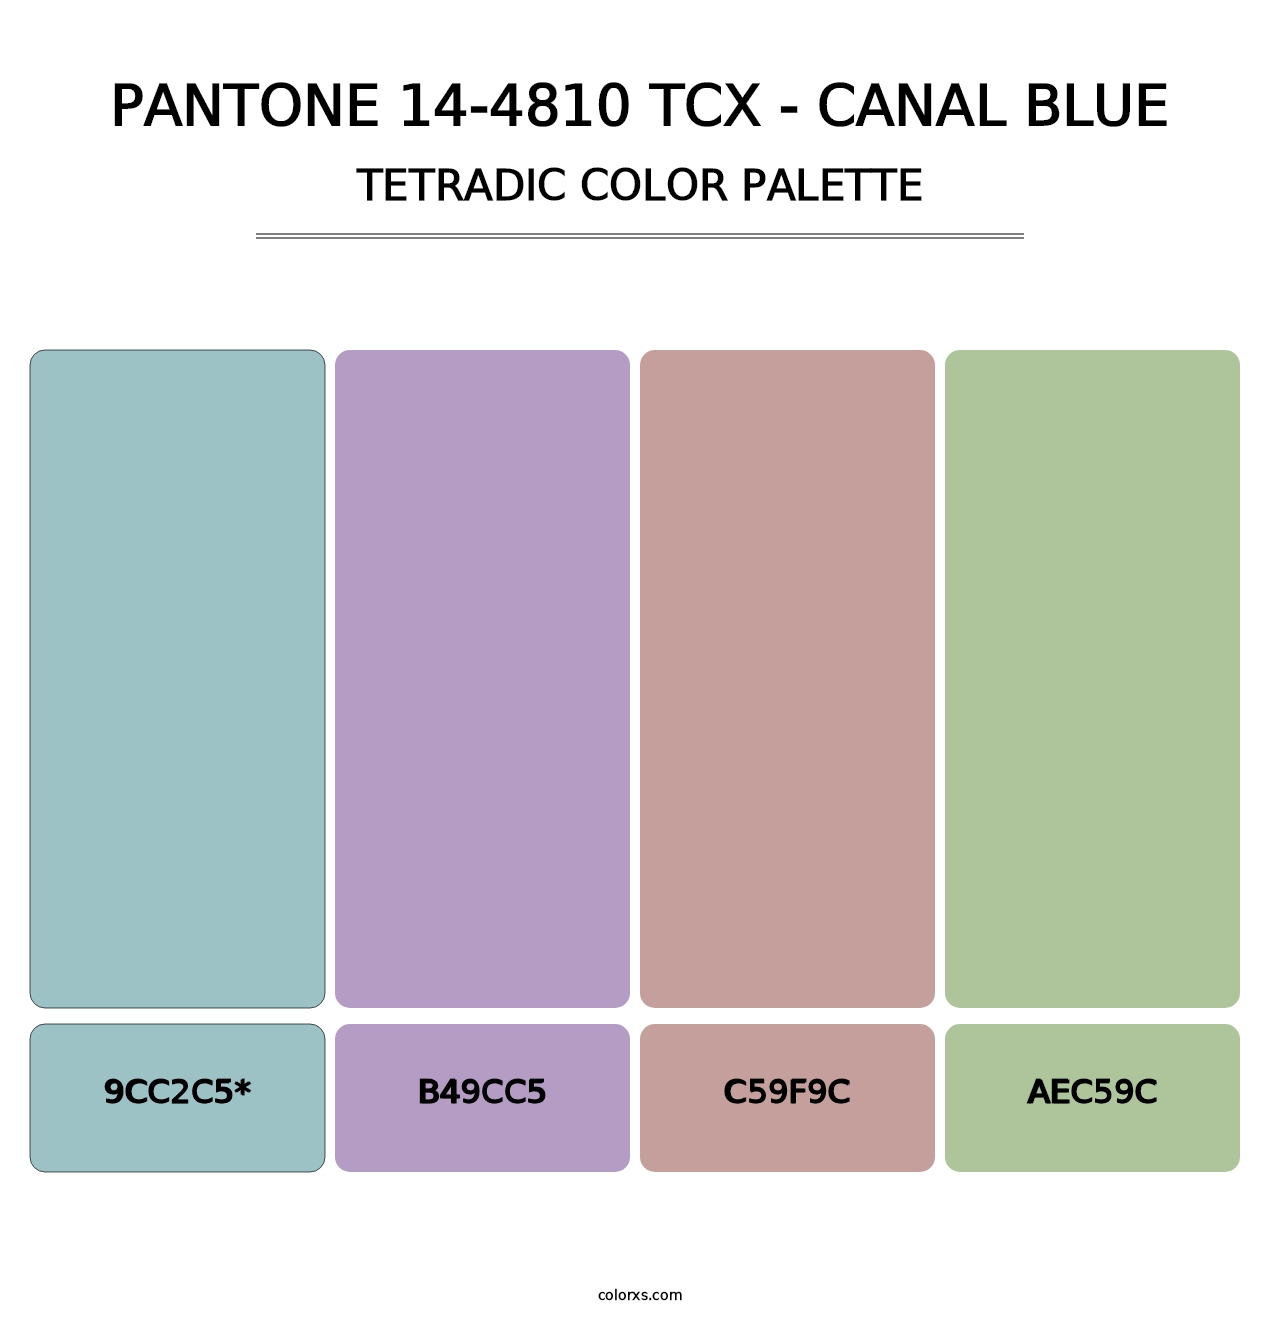 PANTONE 14-4810 TCX - Canal Blue - Tetradic Color Palette